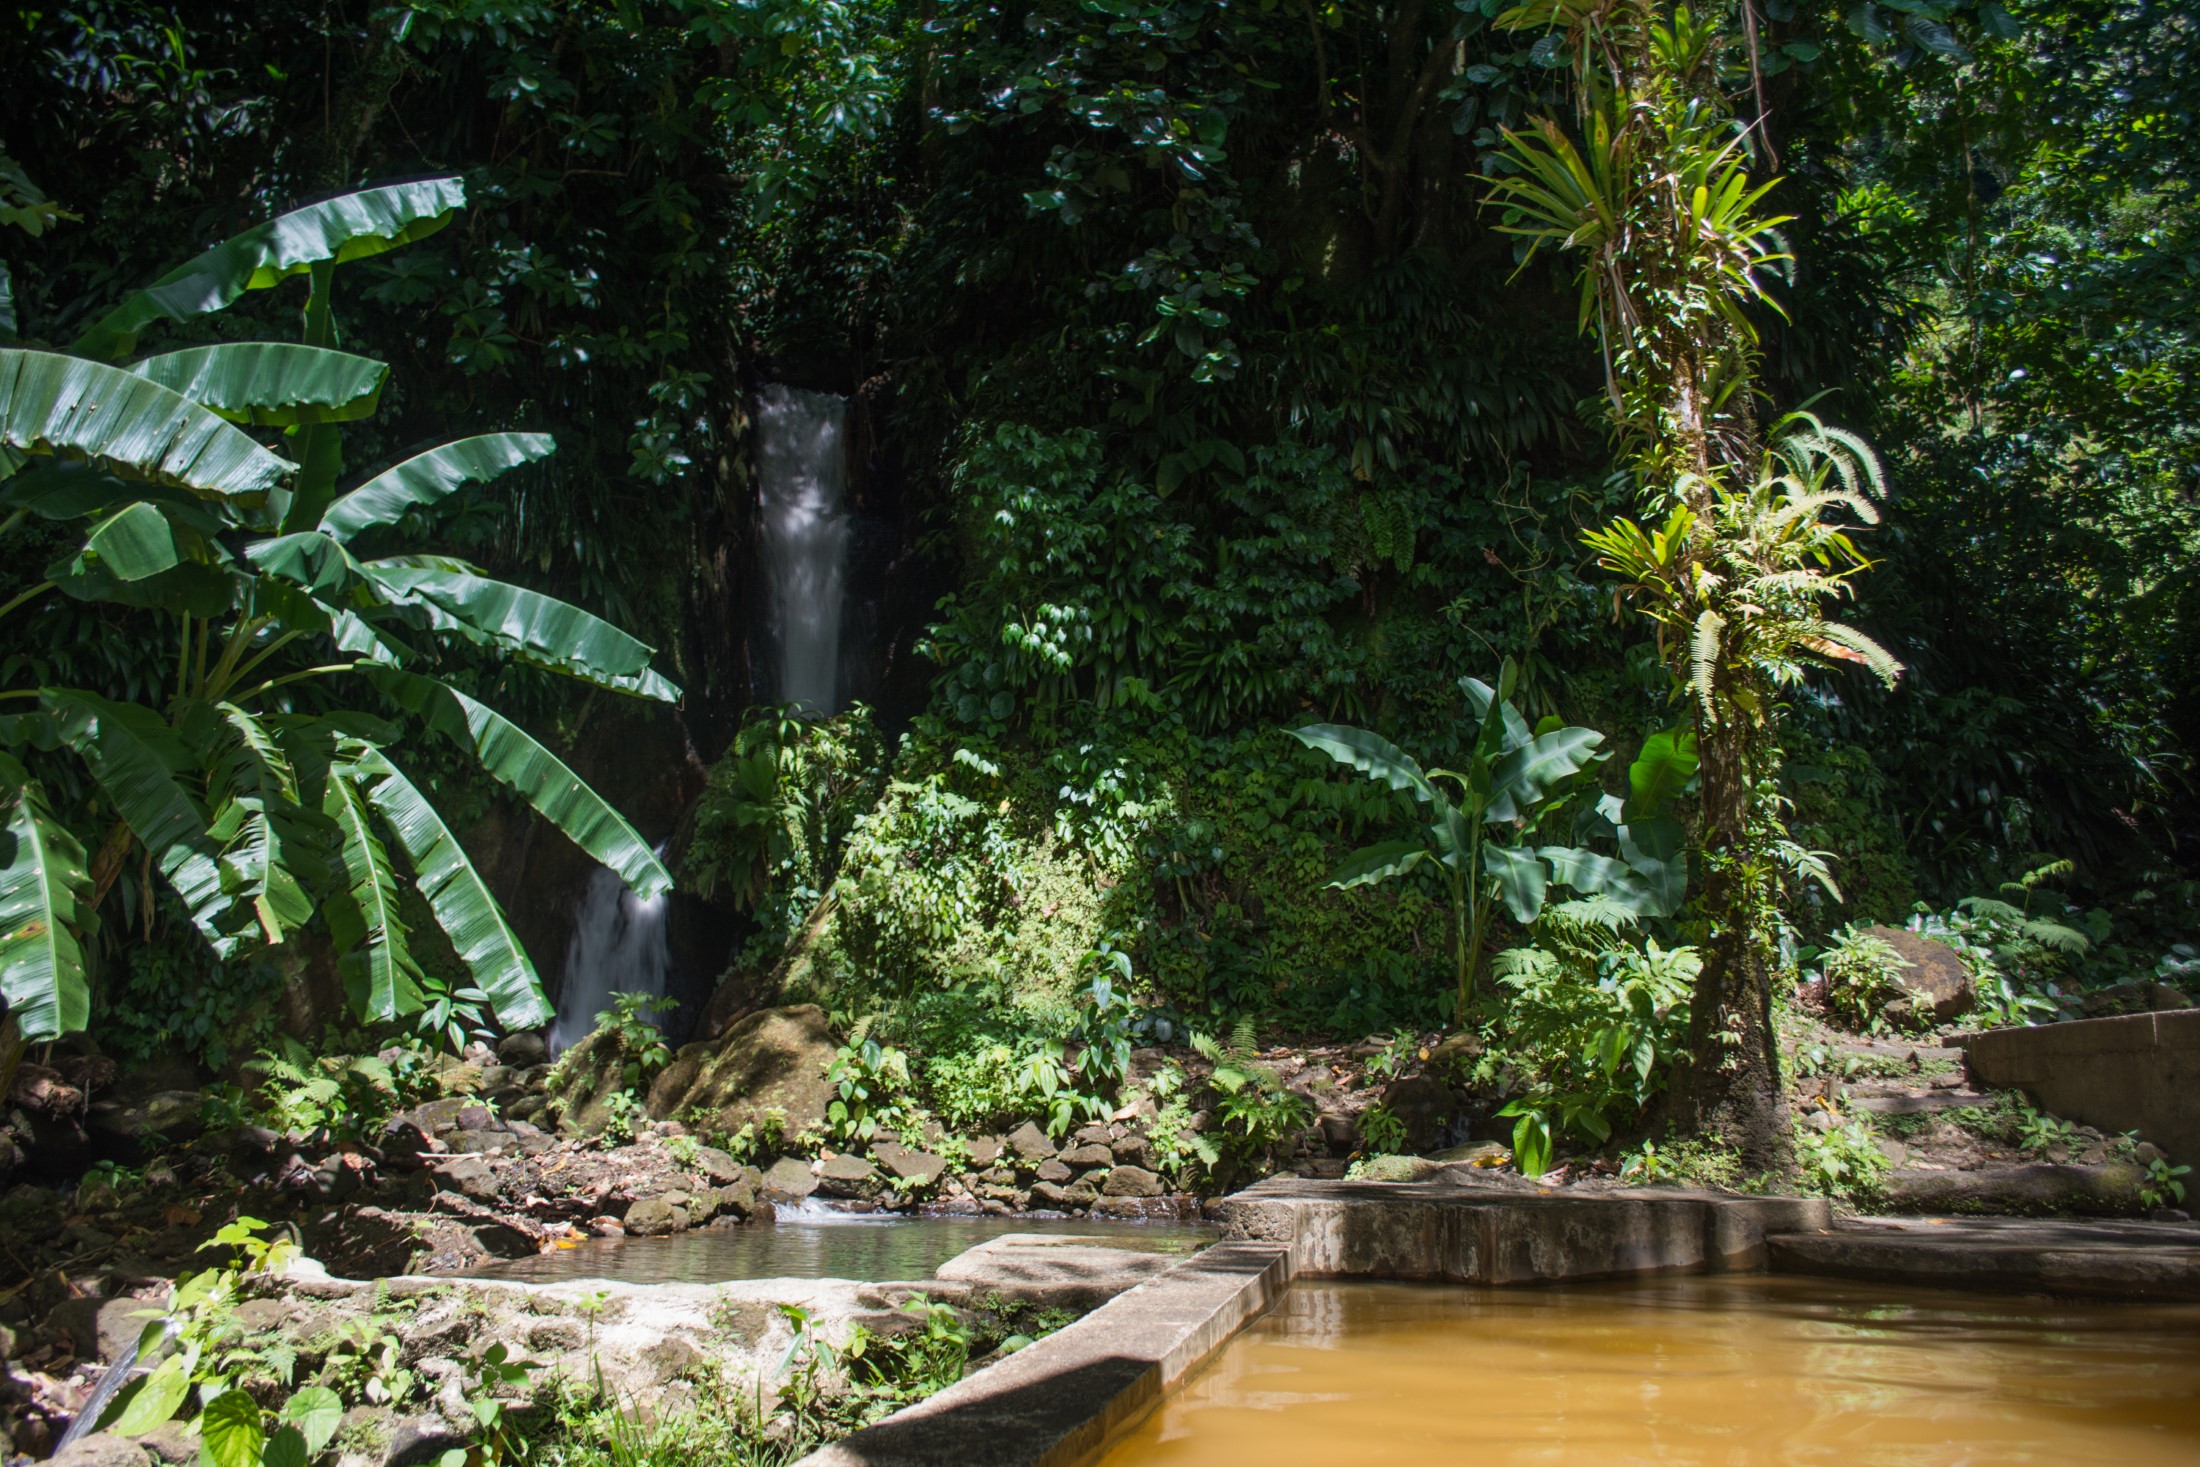 Baseny i wodospad zasilane gorącym źródłem siarki, Papillote Gardens, Dominika